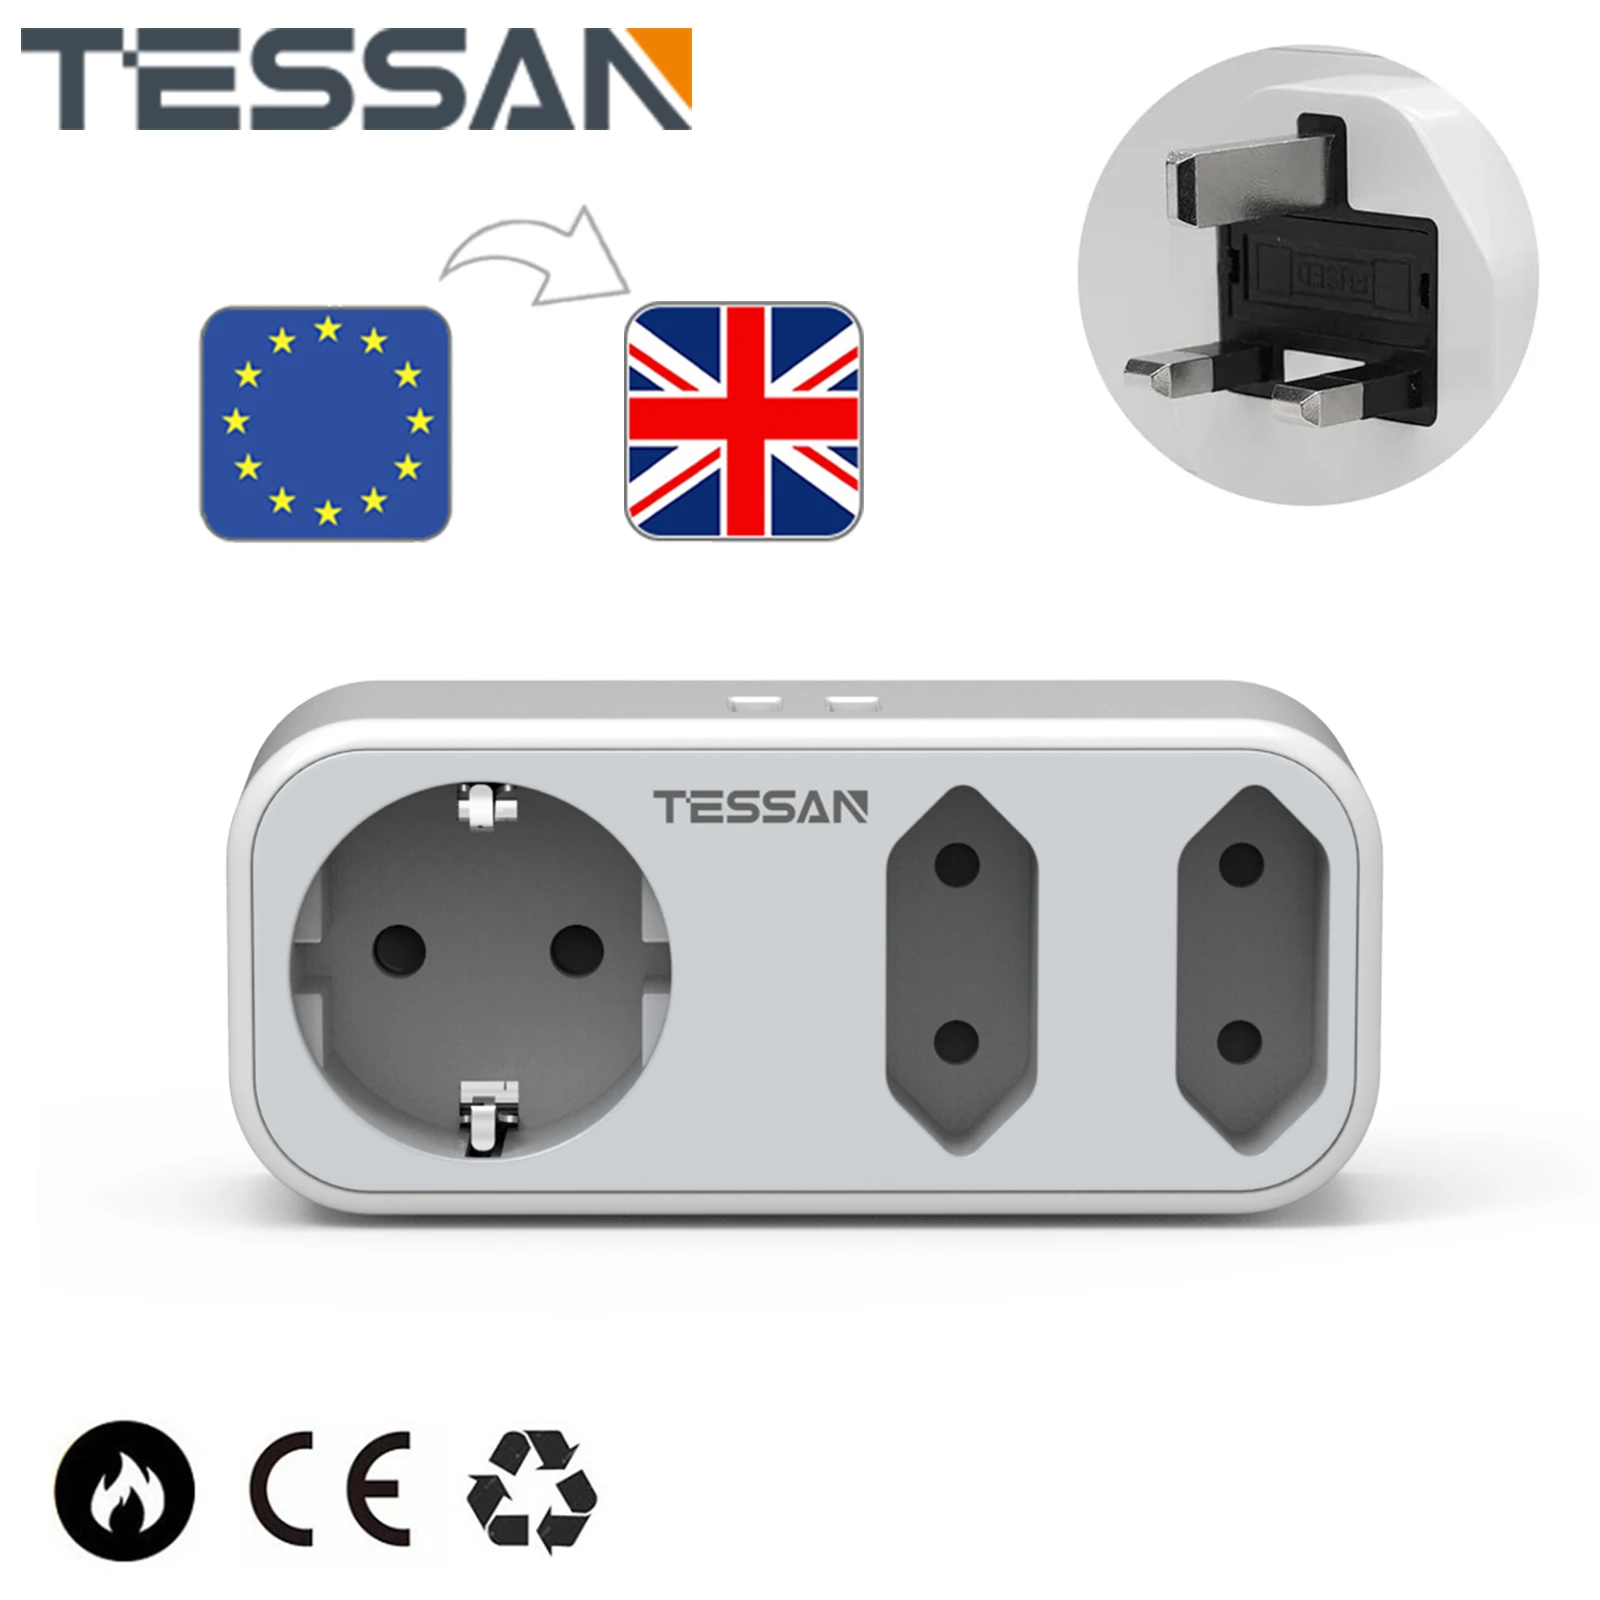 Адаптер TESSAN от ЕС до Великобритании с 3 Розетками и 2 USB, 2-Контактный Адаптер от Европы до 3-контактной Розетки Великобритании для Ирландии / Английского языка /Шотландии